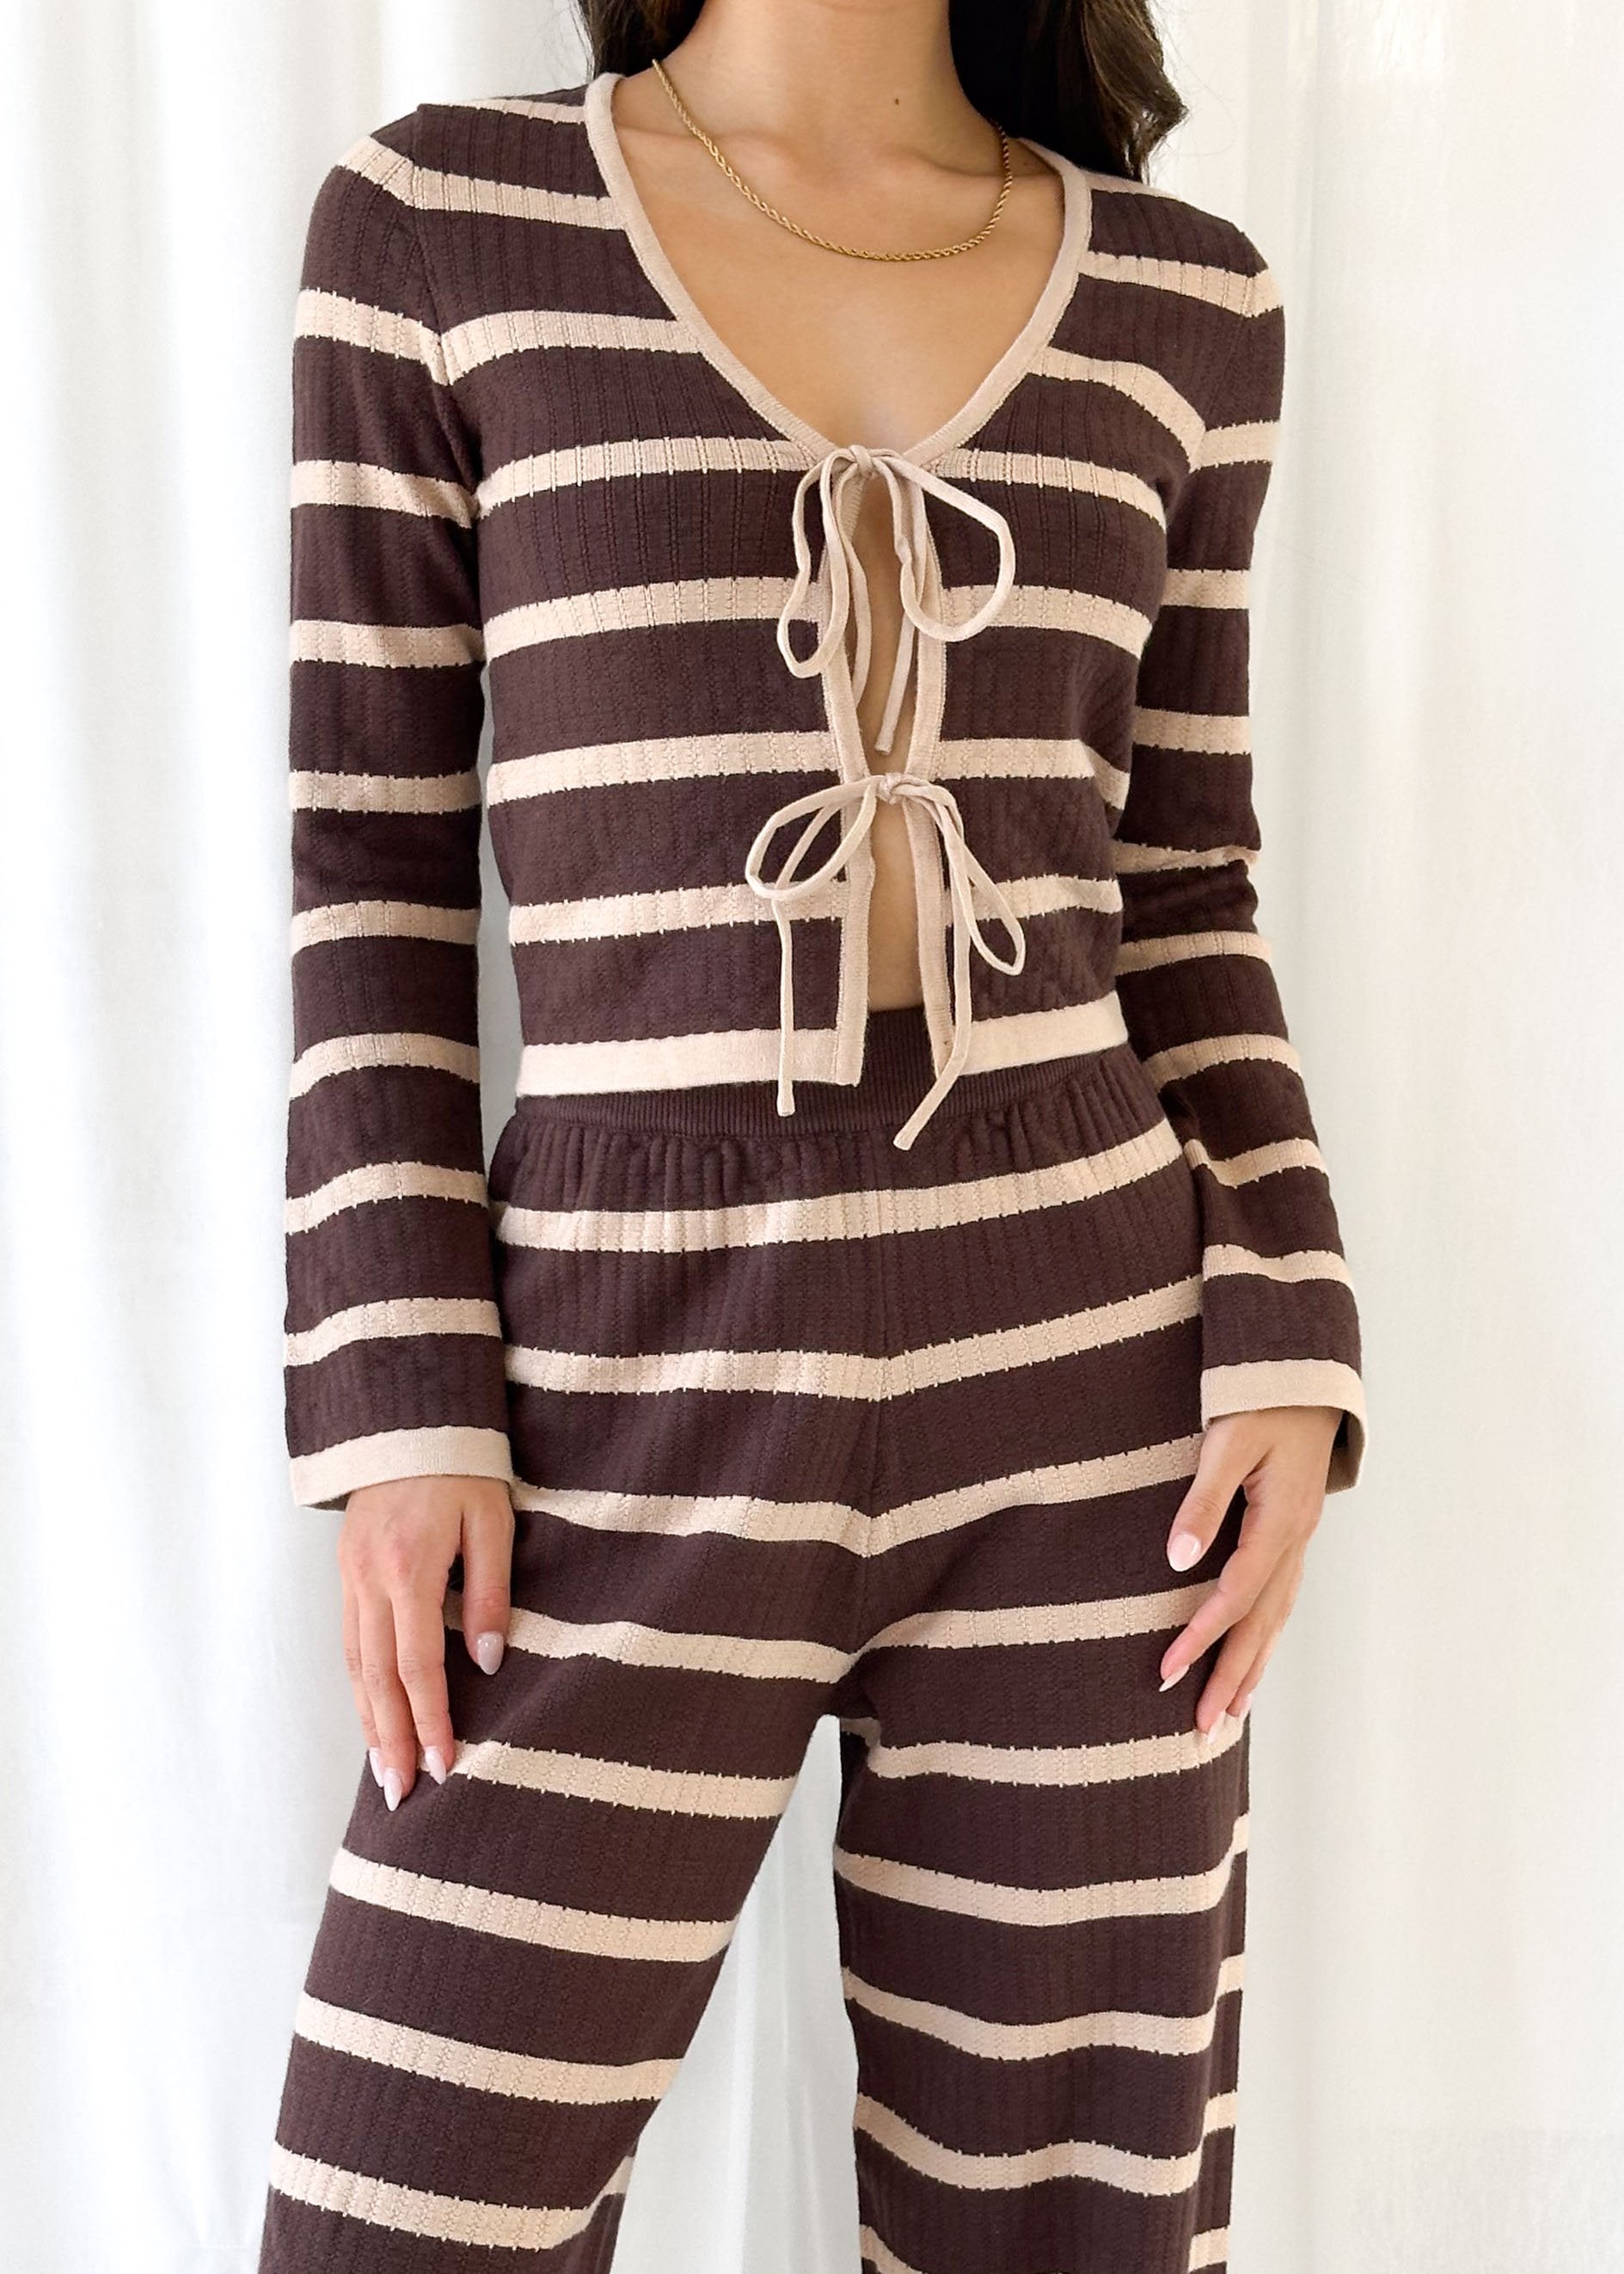 Rayla Knit Top - Choc Stripe